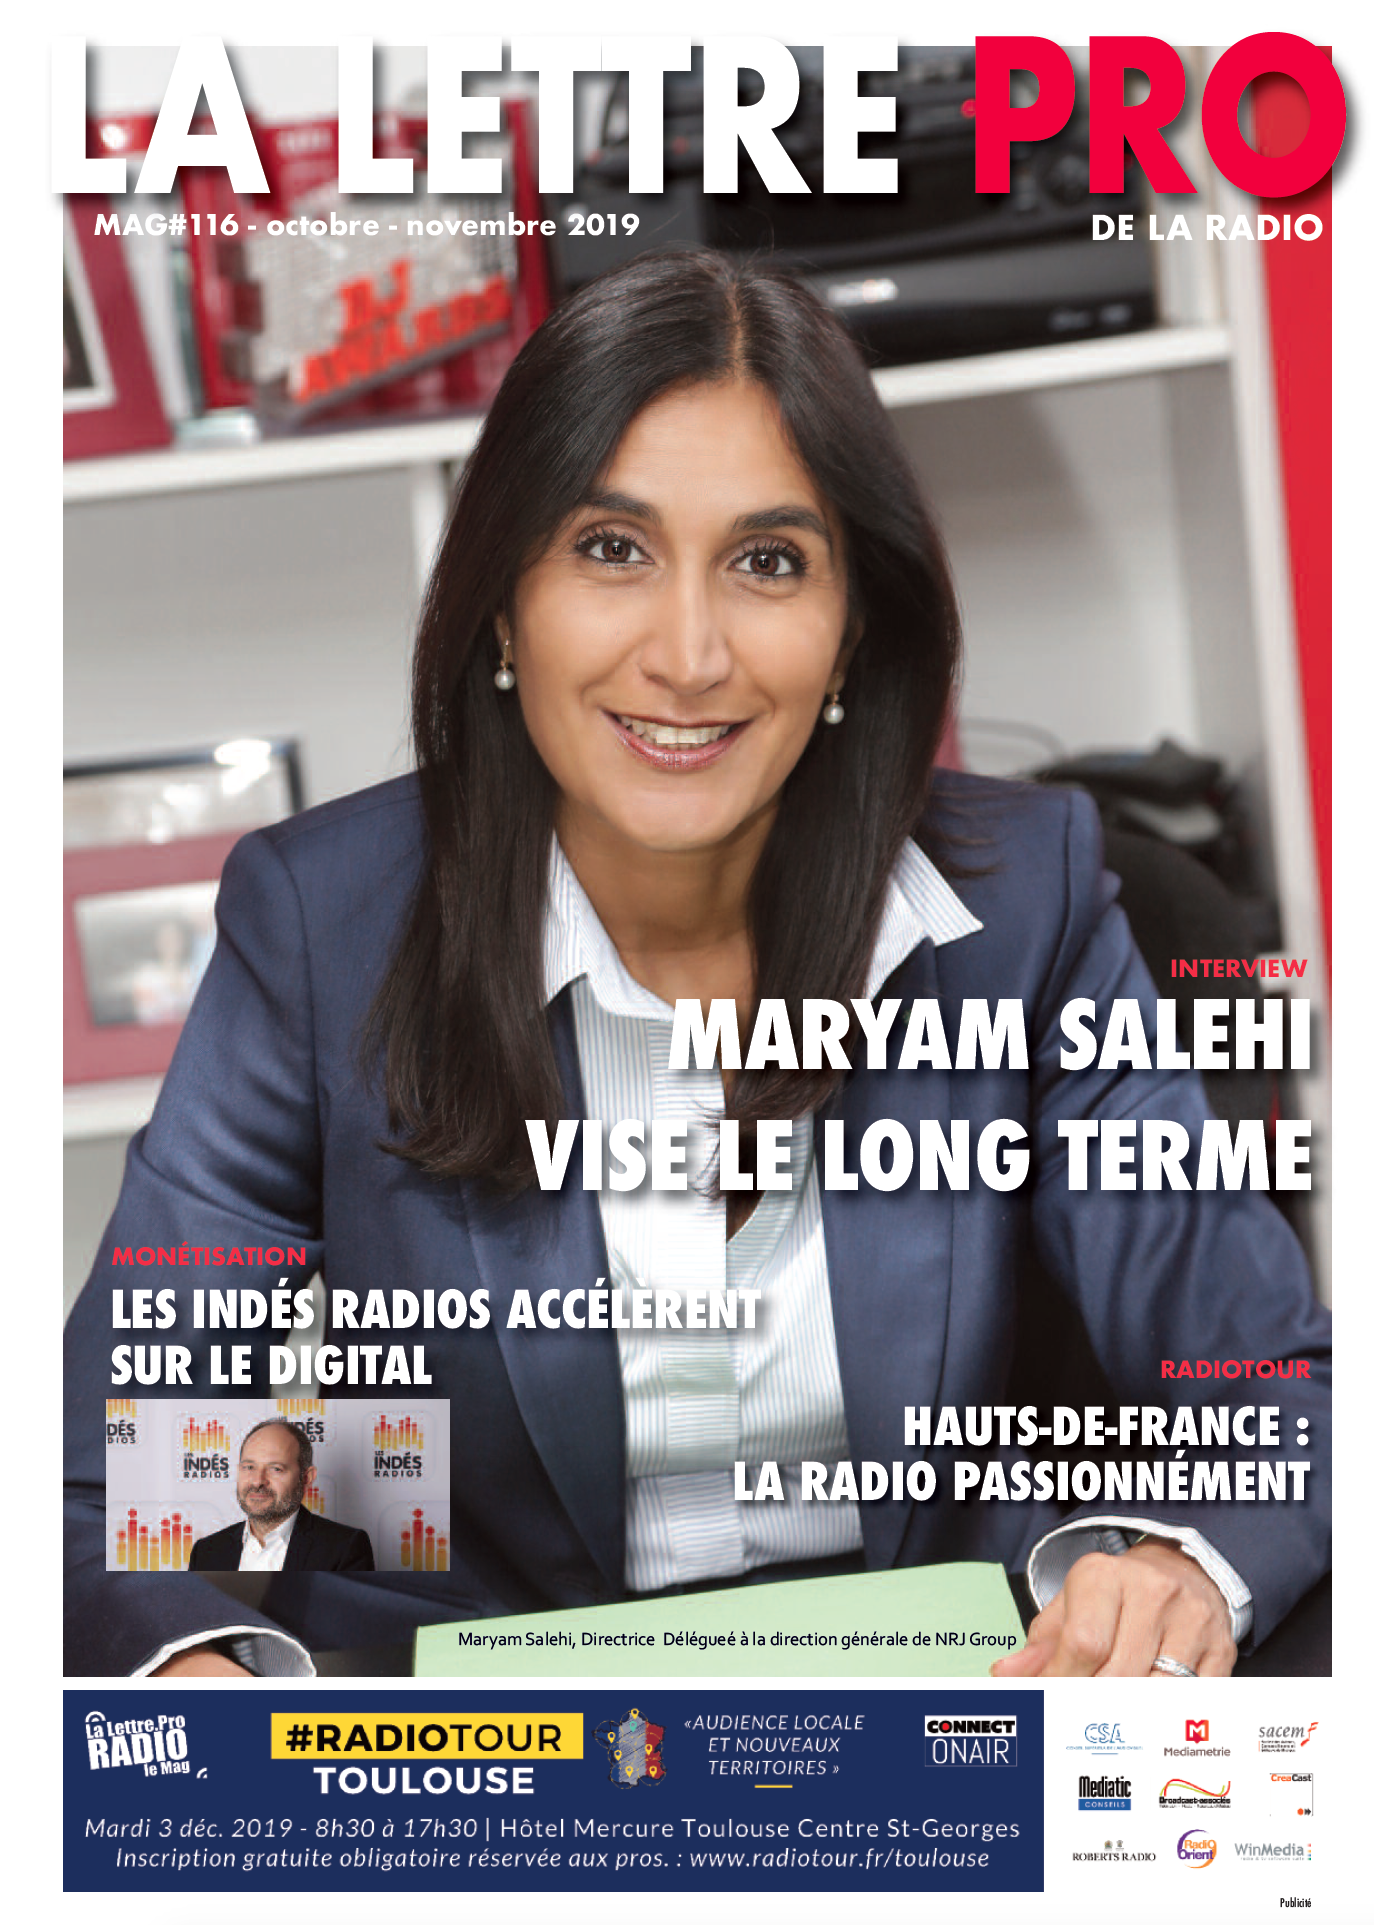 Maryam Salehi fait la Une du 116e numéro de la Lettre Pro de la Radio